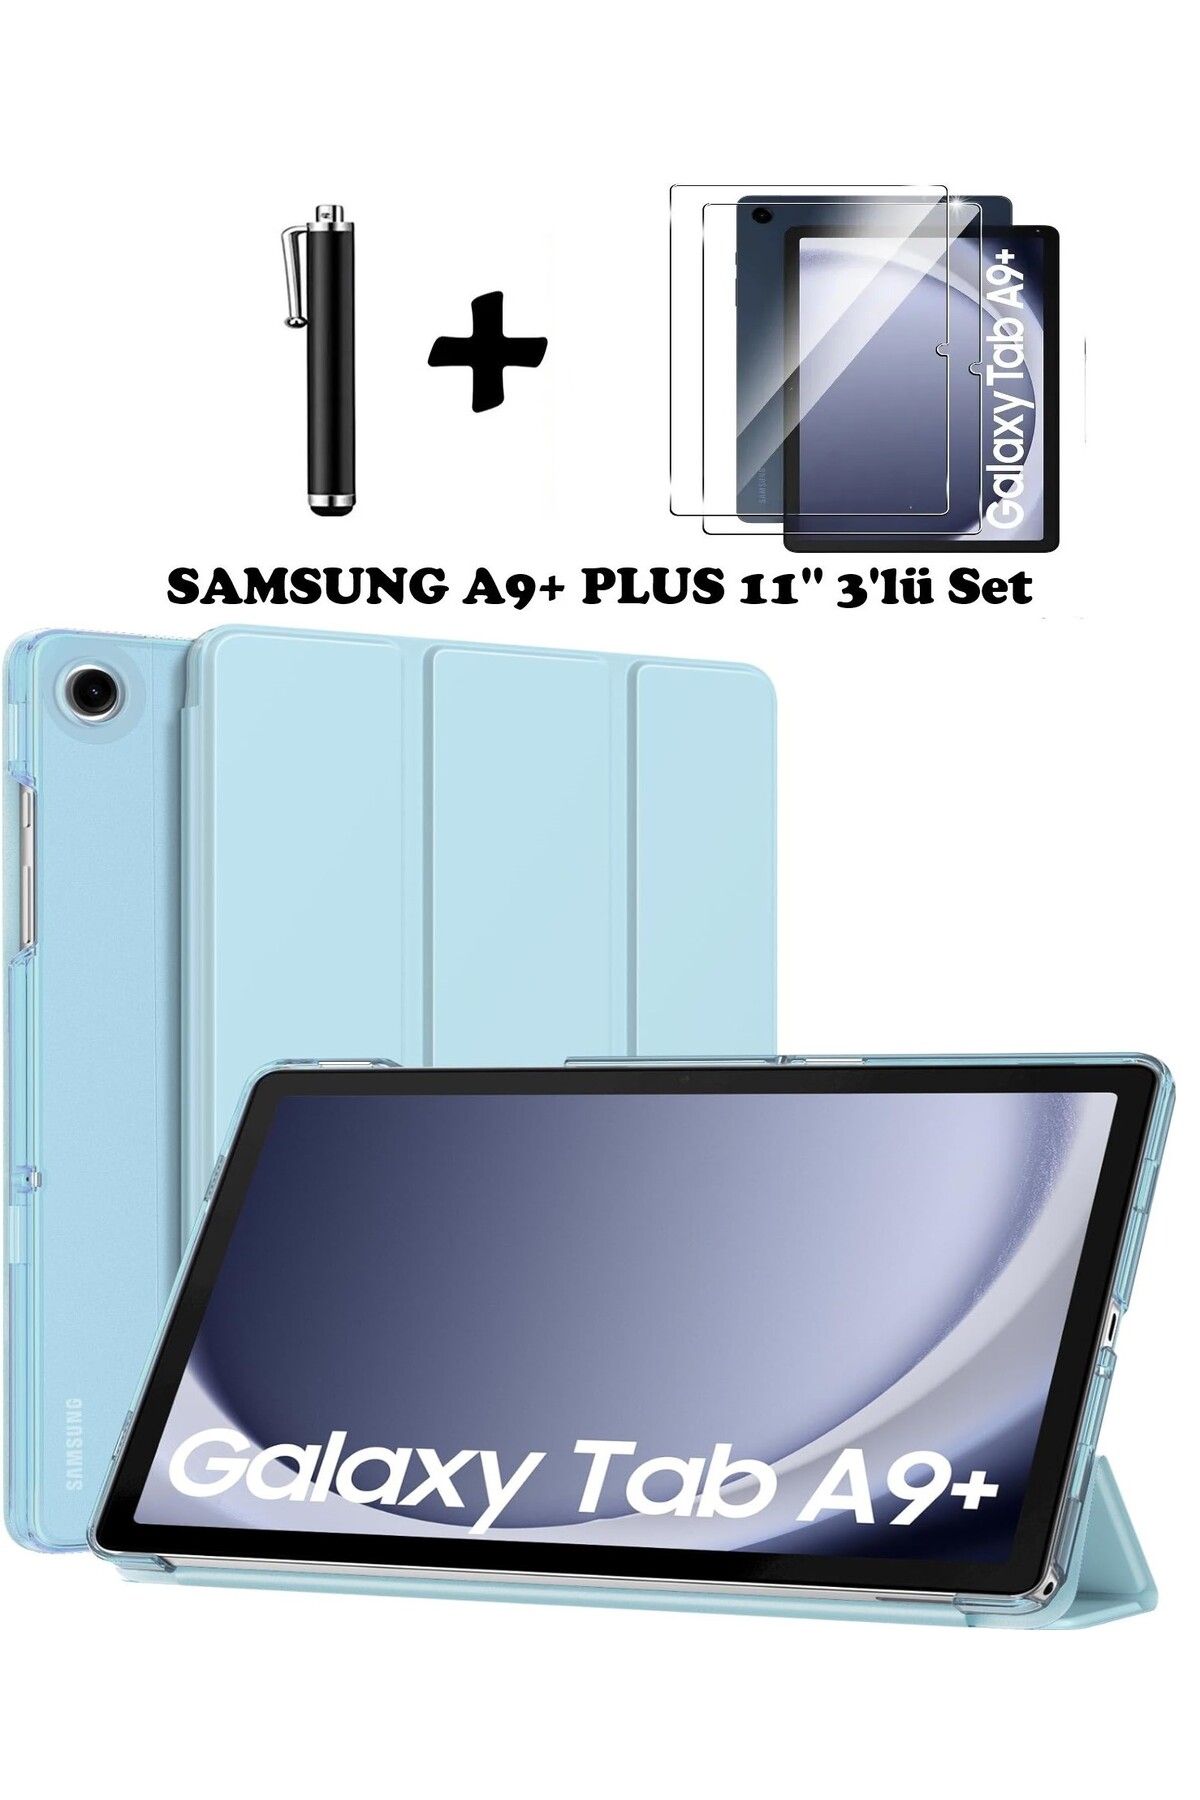 TEKNETSTORE Samsun Galaxy Tab A9+ Plus X210 Uyumlu Tablet Kılıfı Ekran Koruyucu Dokunmatik Kalem Seti